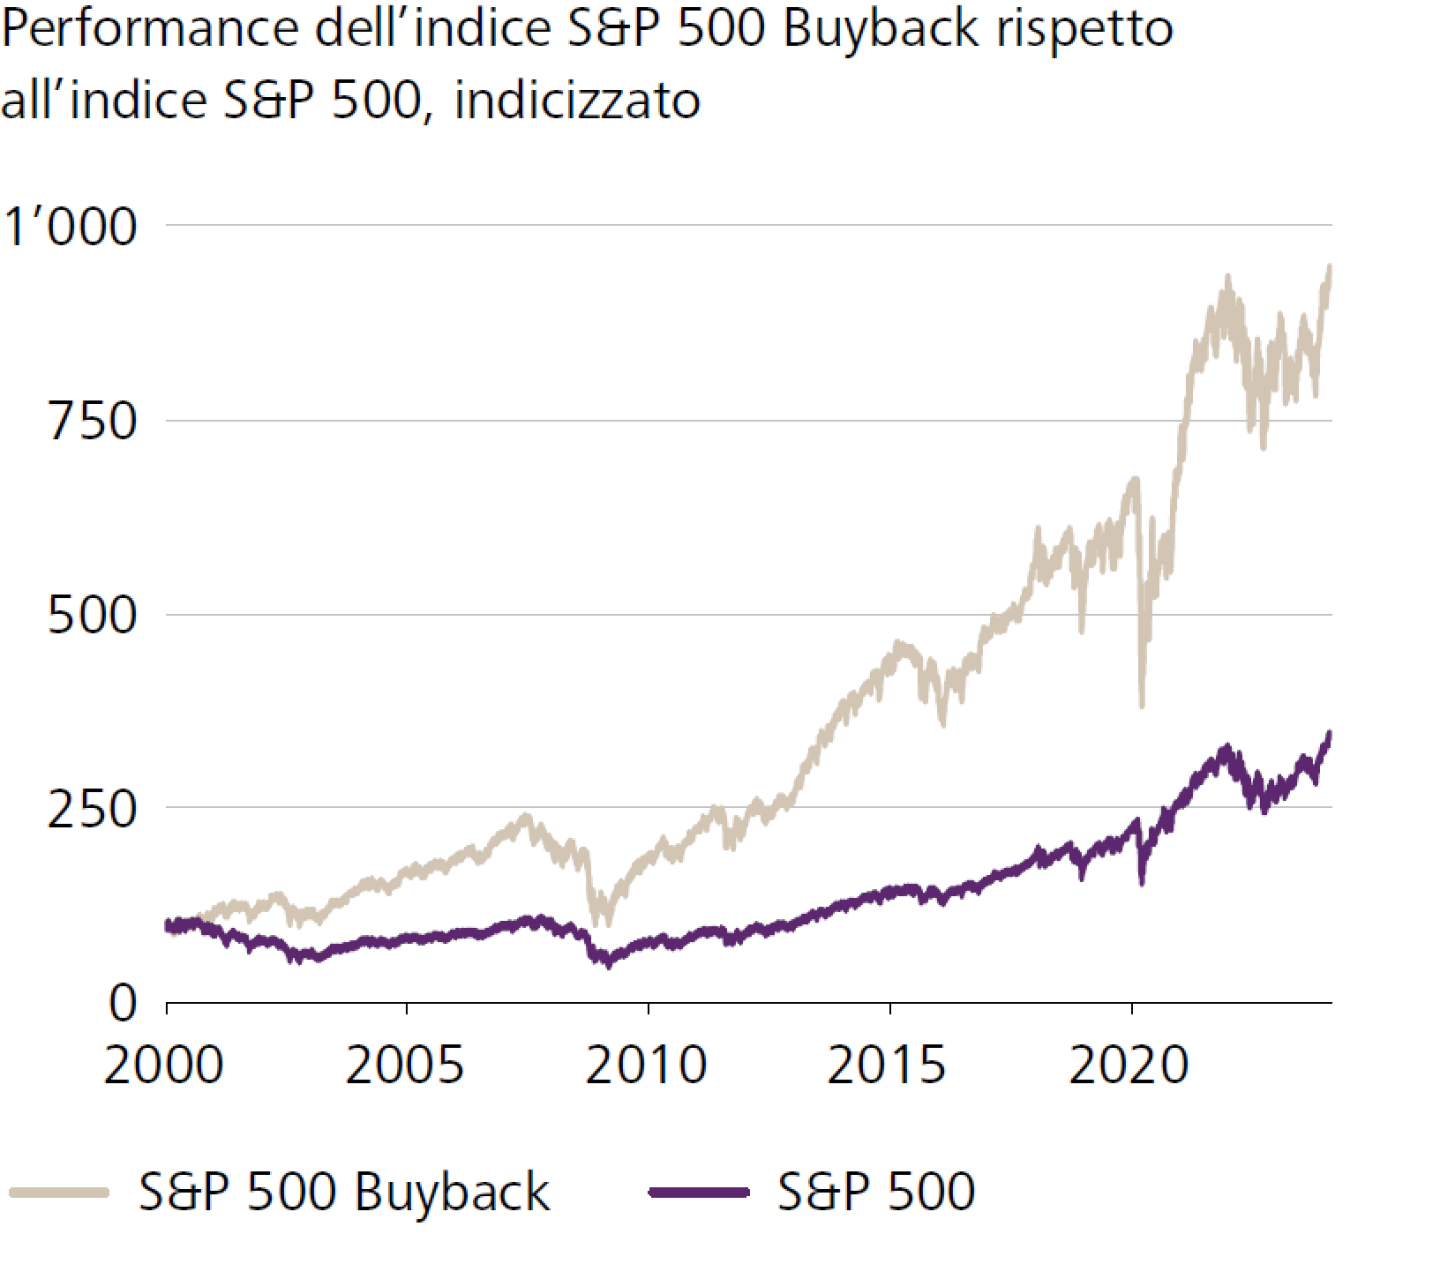 Performance dell'indice S&P 500 Buyback rispetto all'indice S&P 500, indicizzato